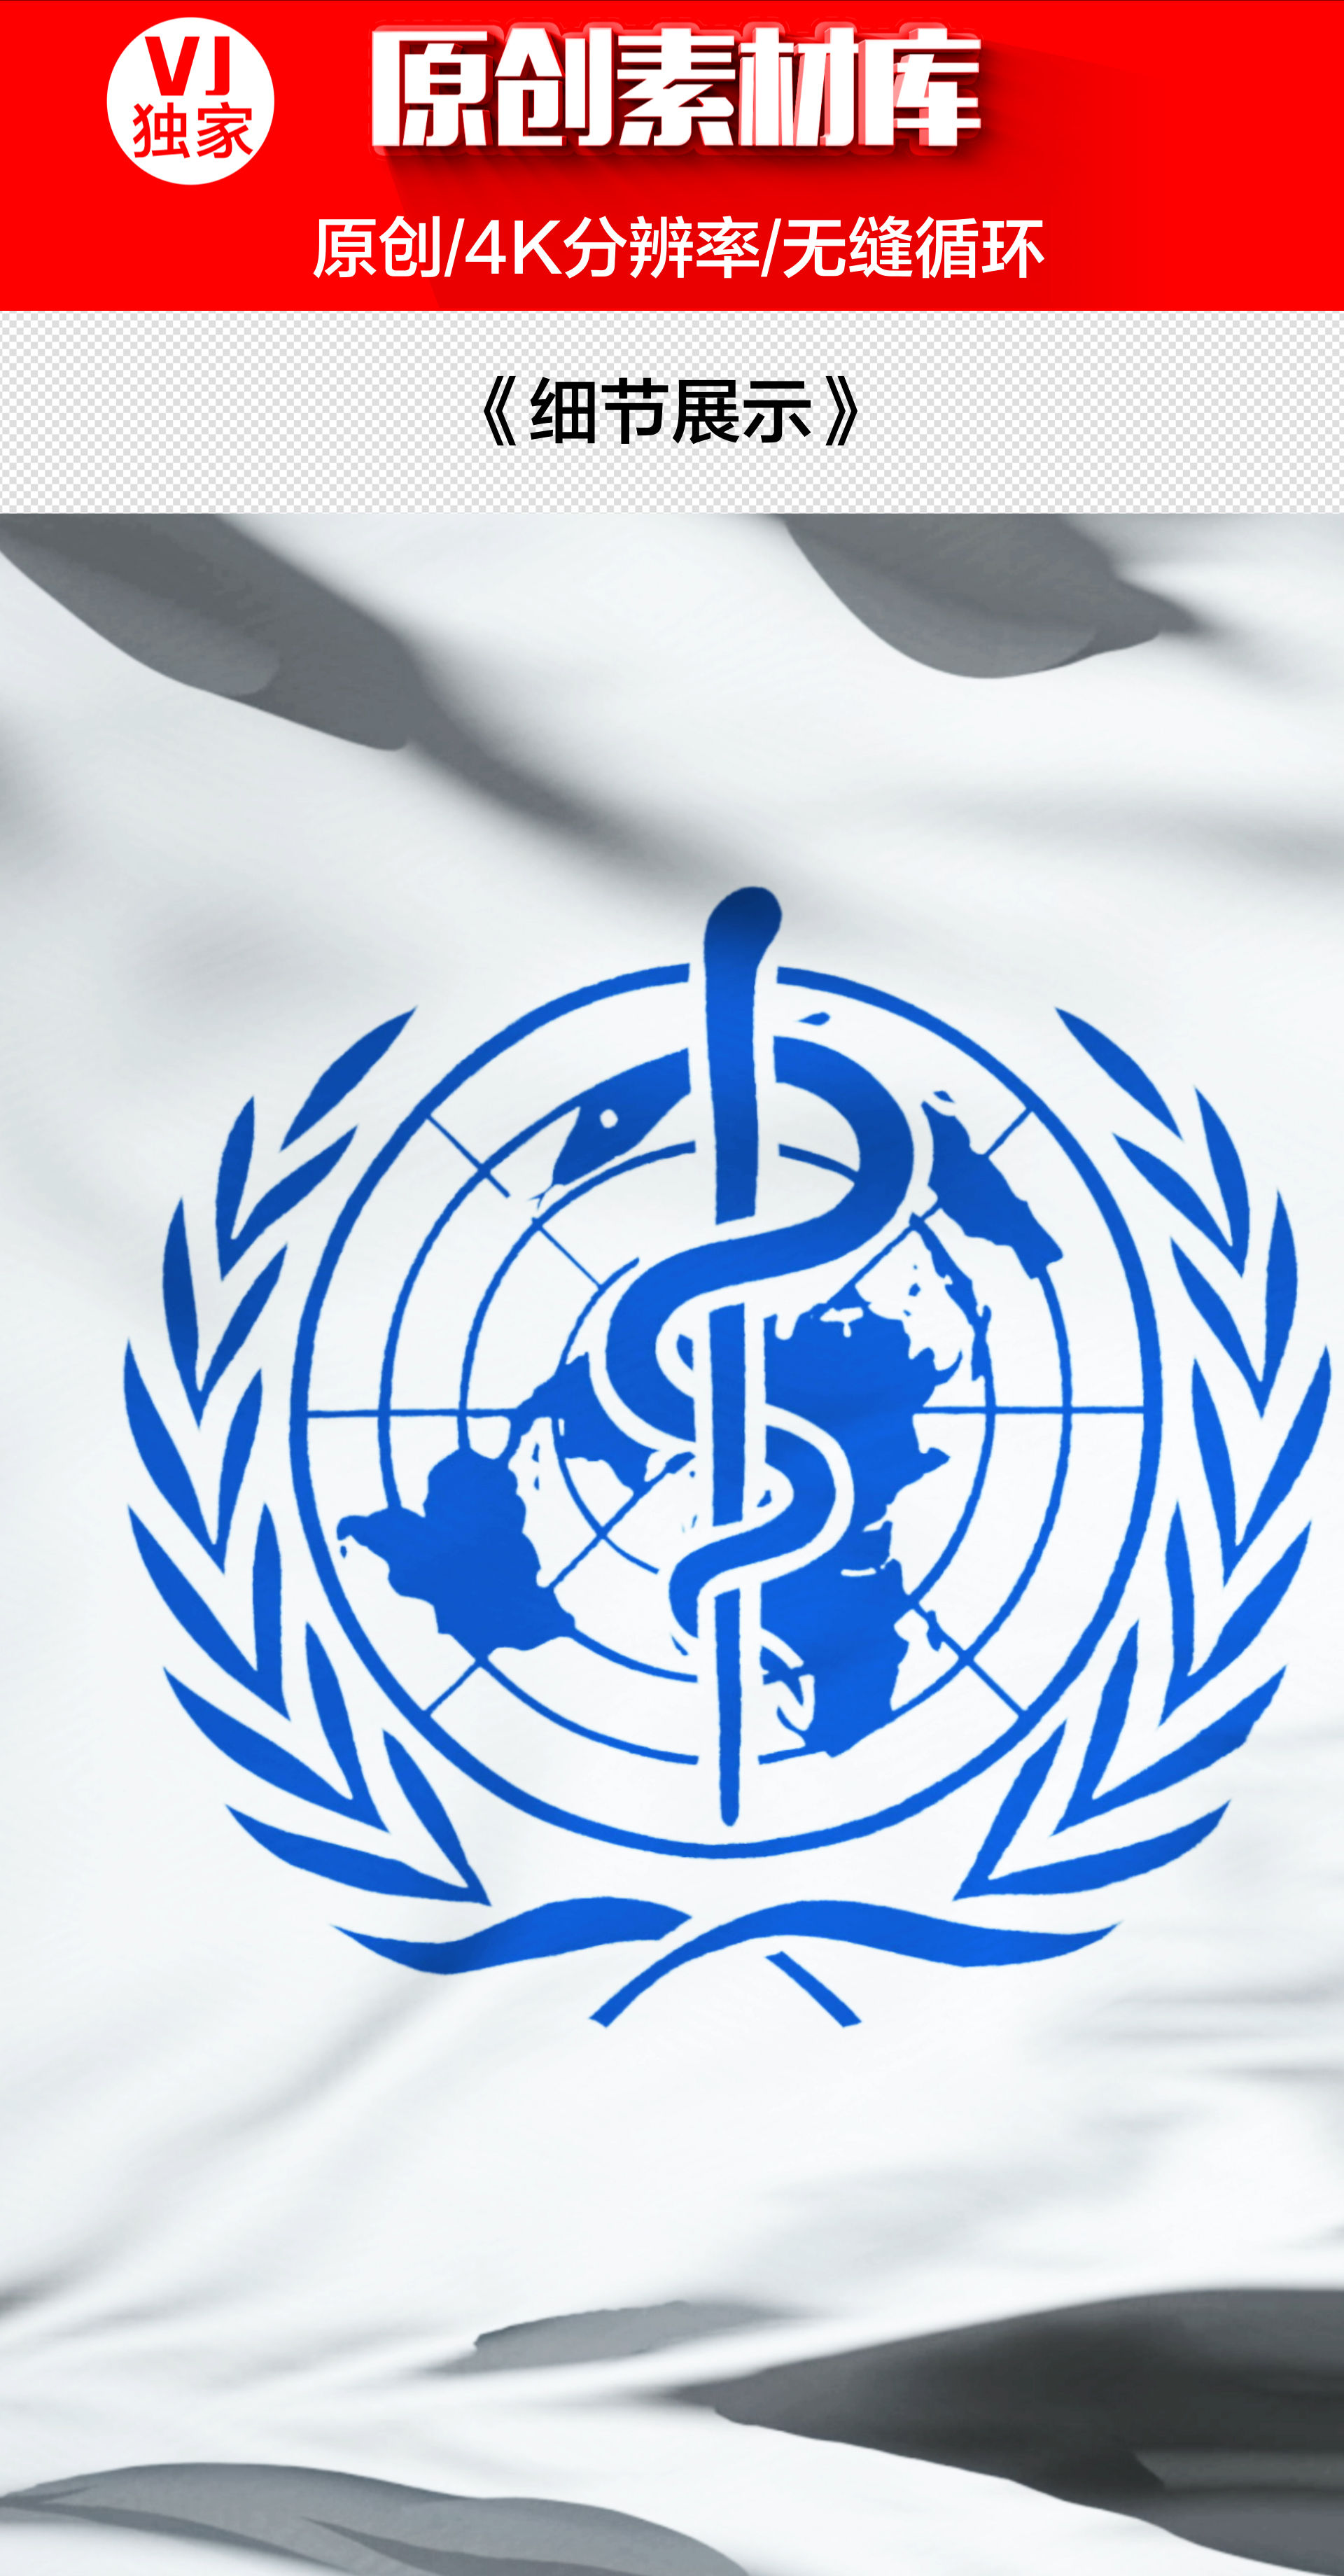 【原创】4k世界卫生组织旗帜(循环)